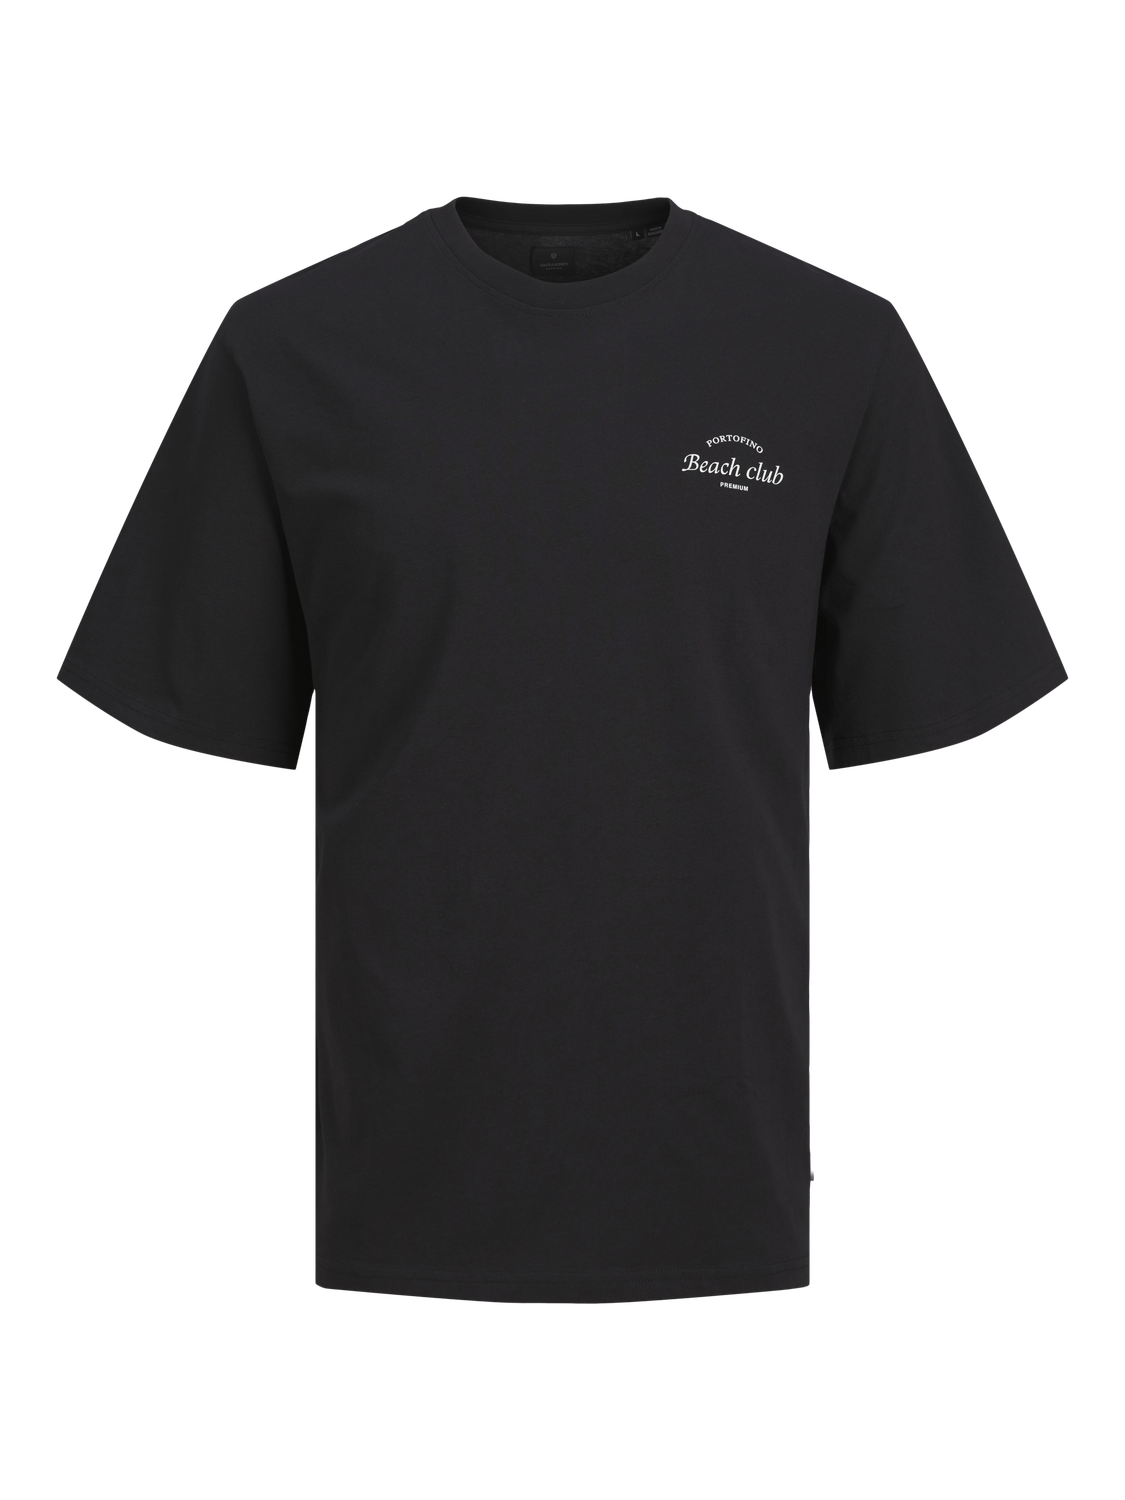 Jack & Jones Printet Crew neck T-shirt -Black Onyx - 12263520